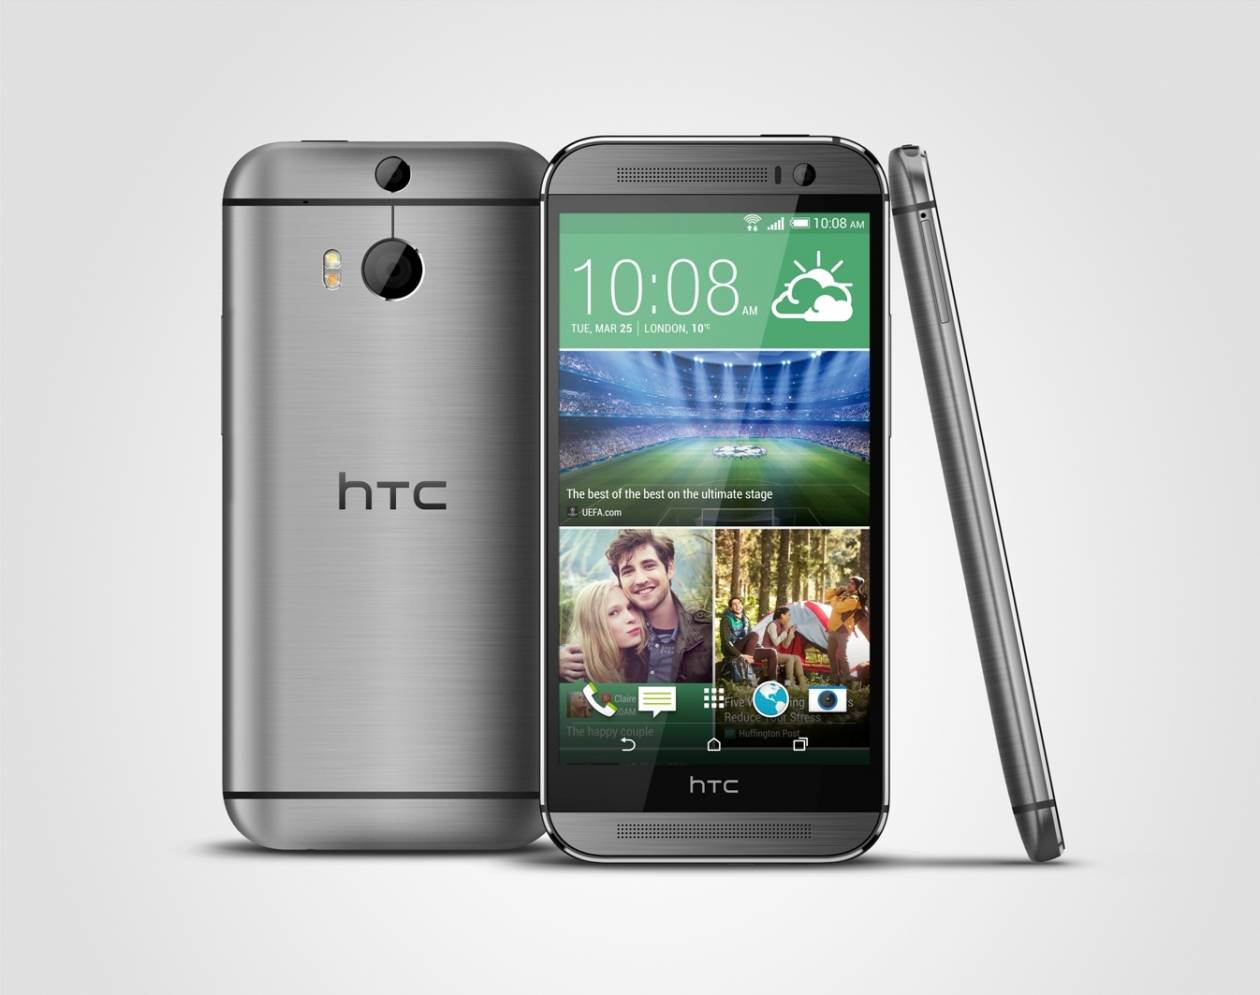 Η HTC λανσάρει το HTC ONE (Μ8) στην ελληνική αγορά!